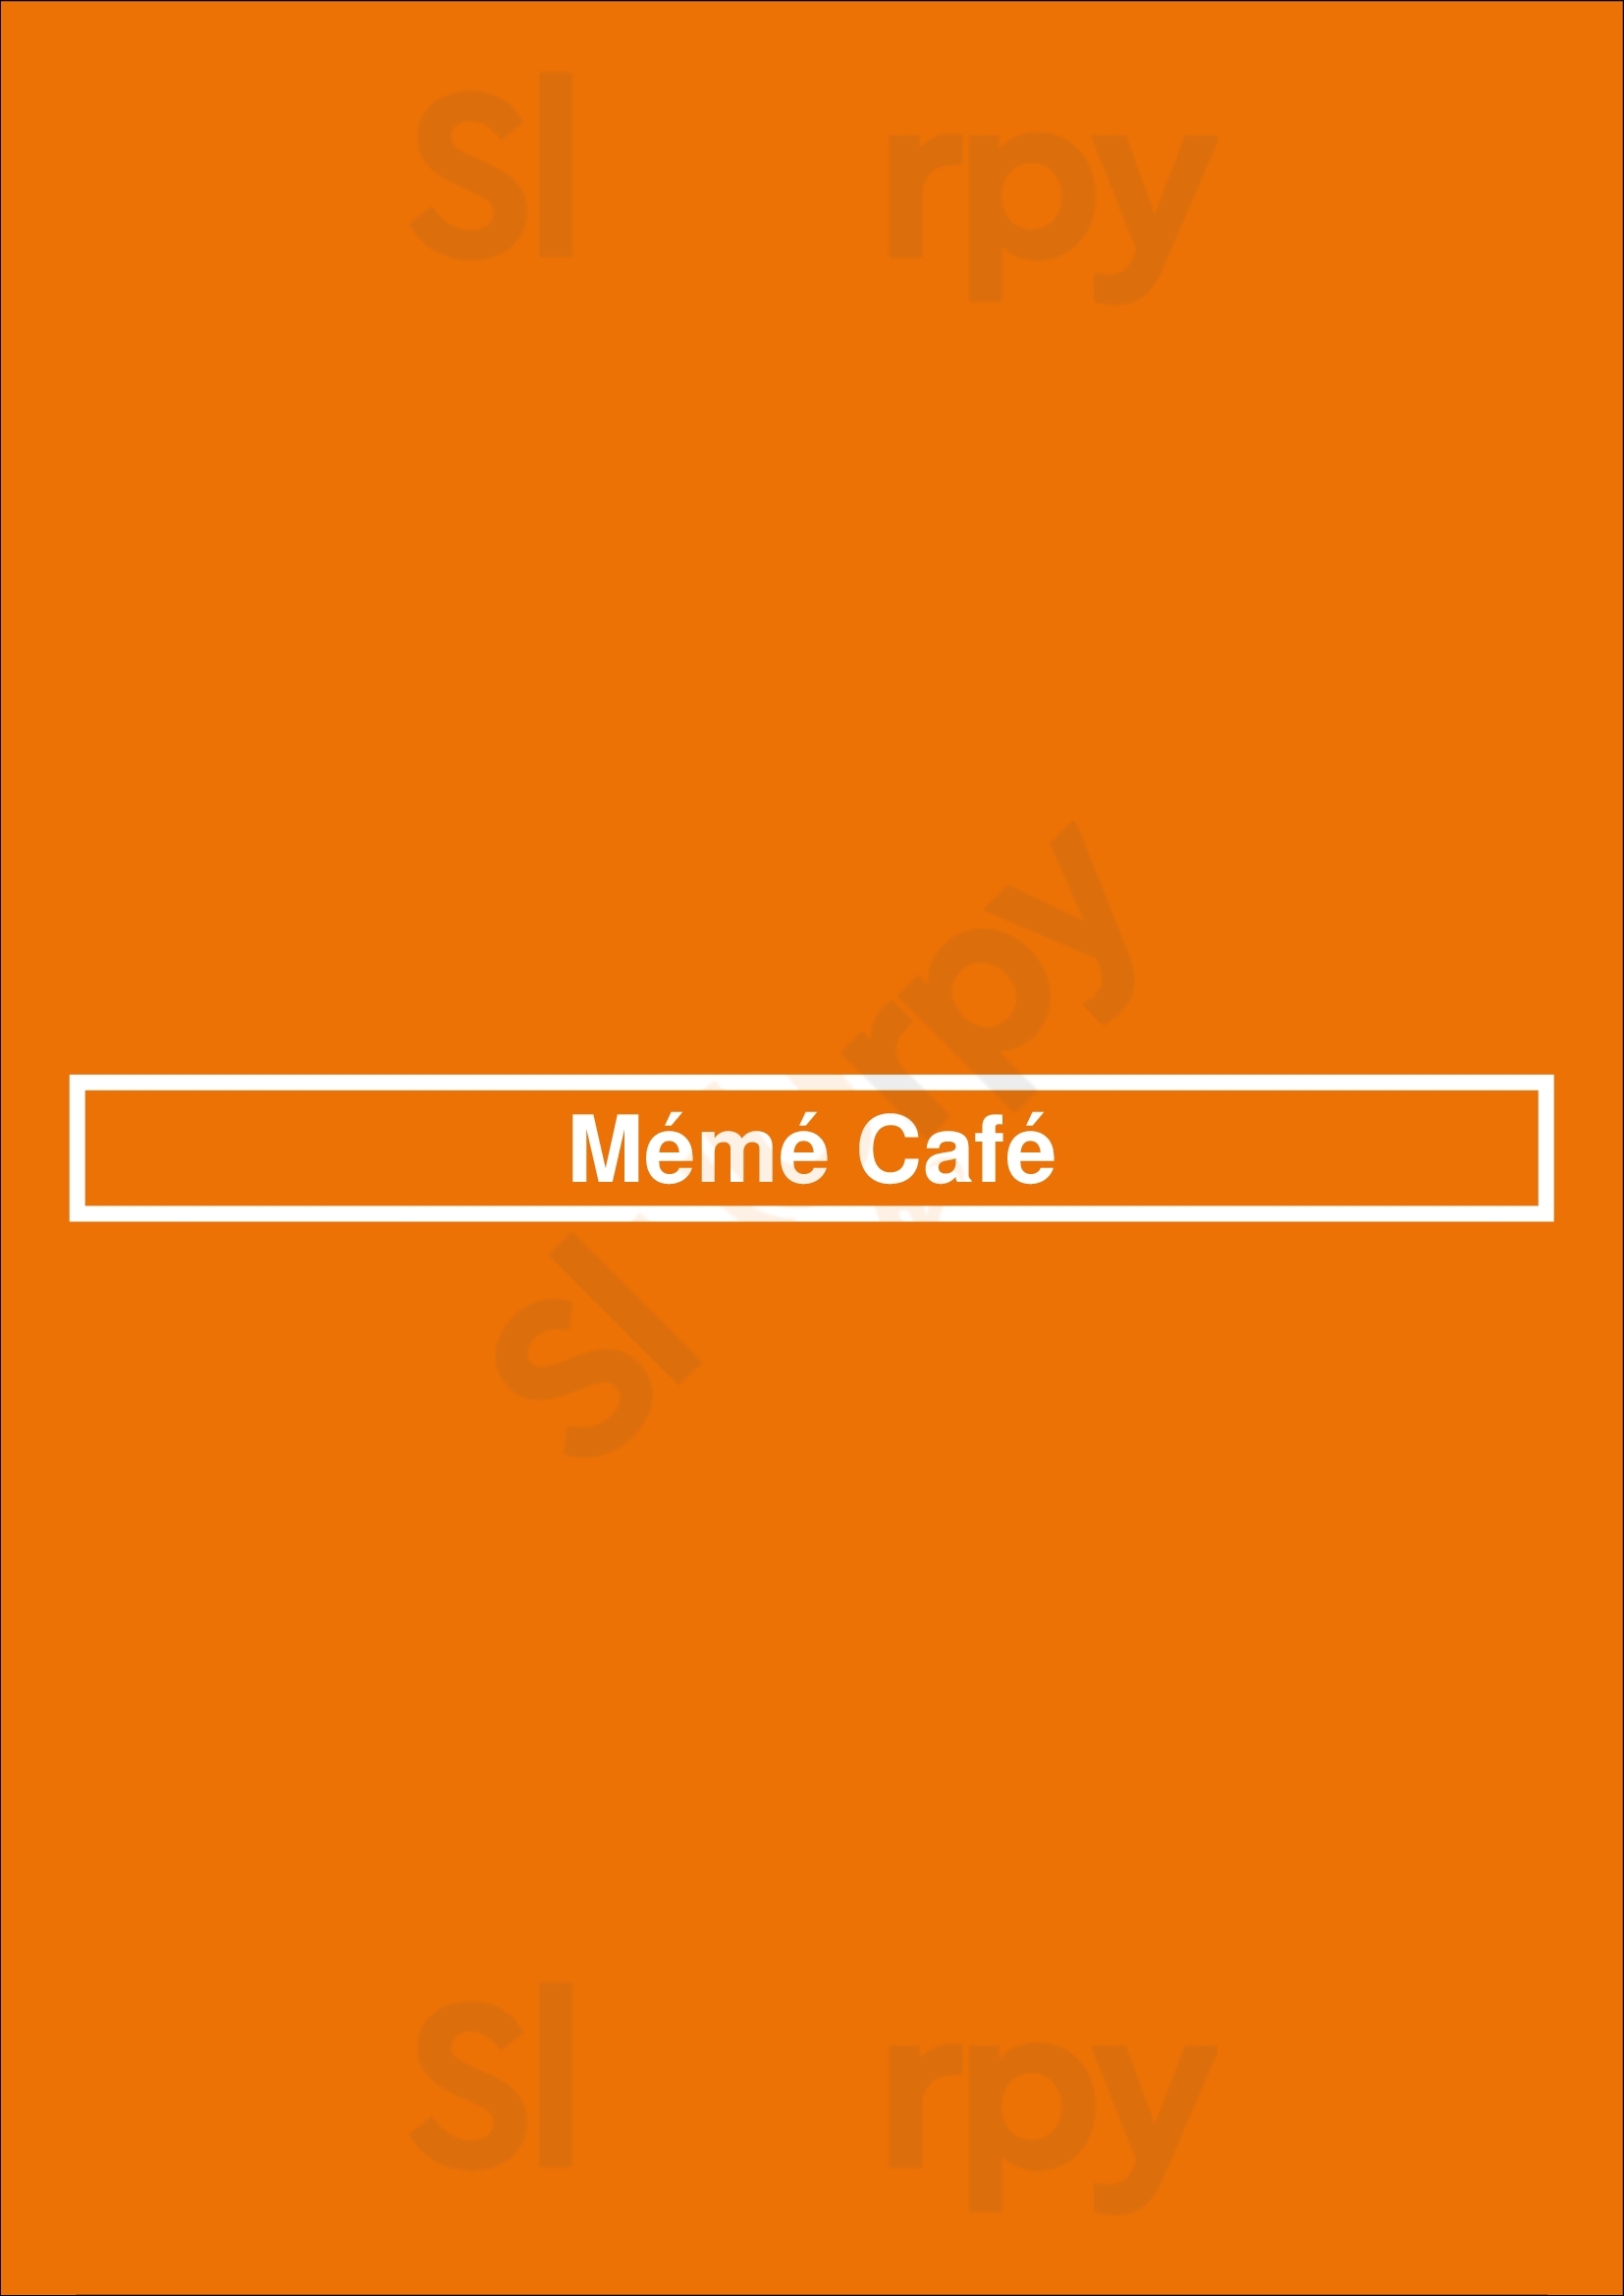 Mémé Café Bruxelles Menu - 1